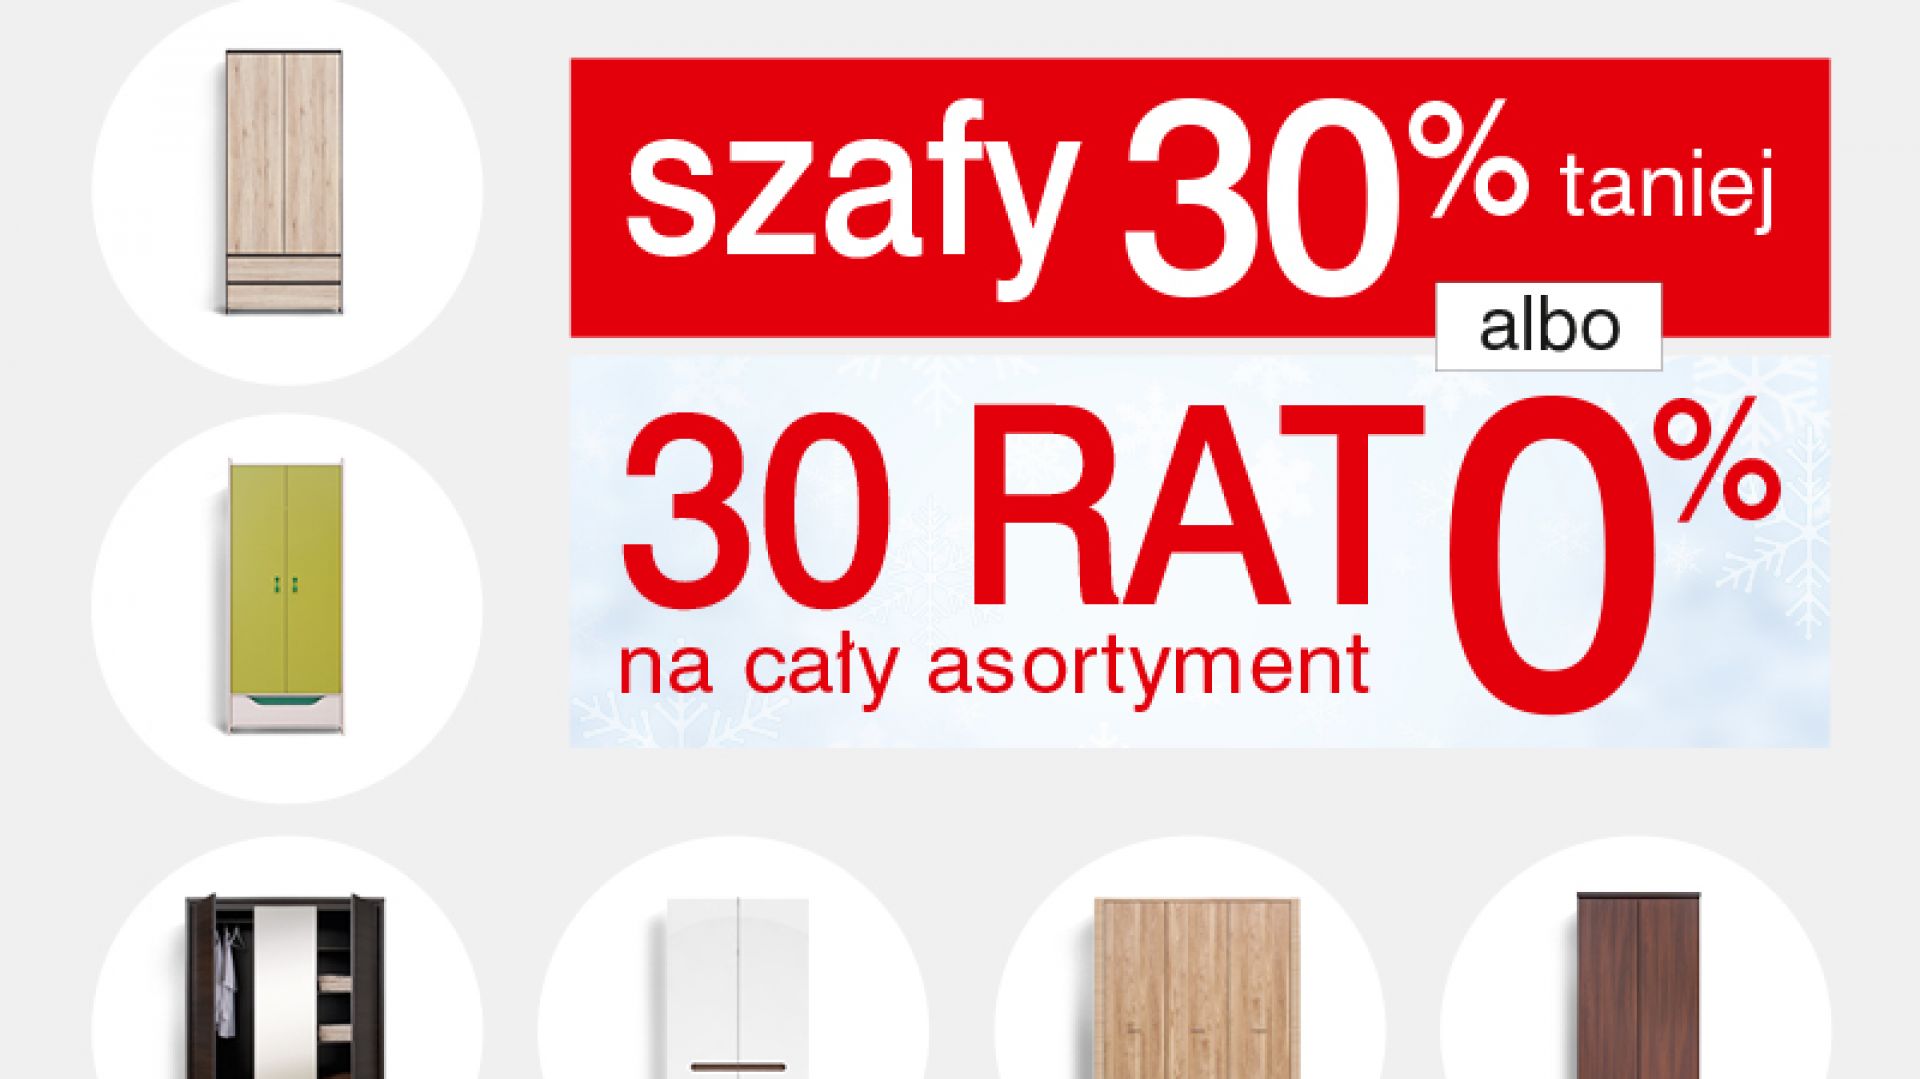 W Black Red White szafy 30% taniej albo 30 rat 0% na cały asortyment!